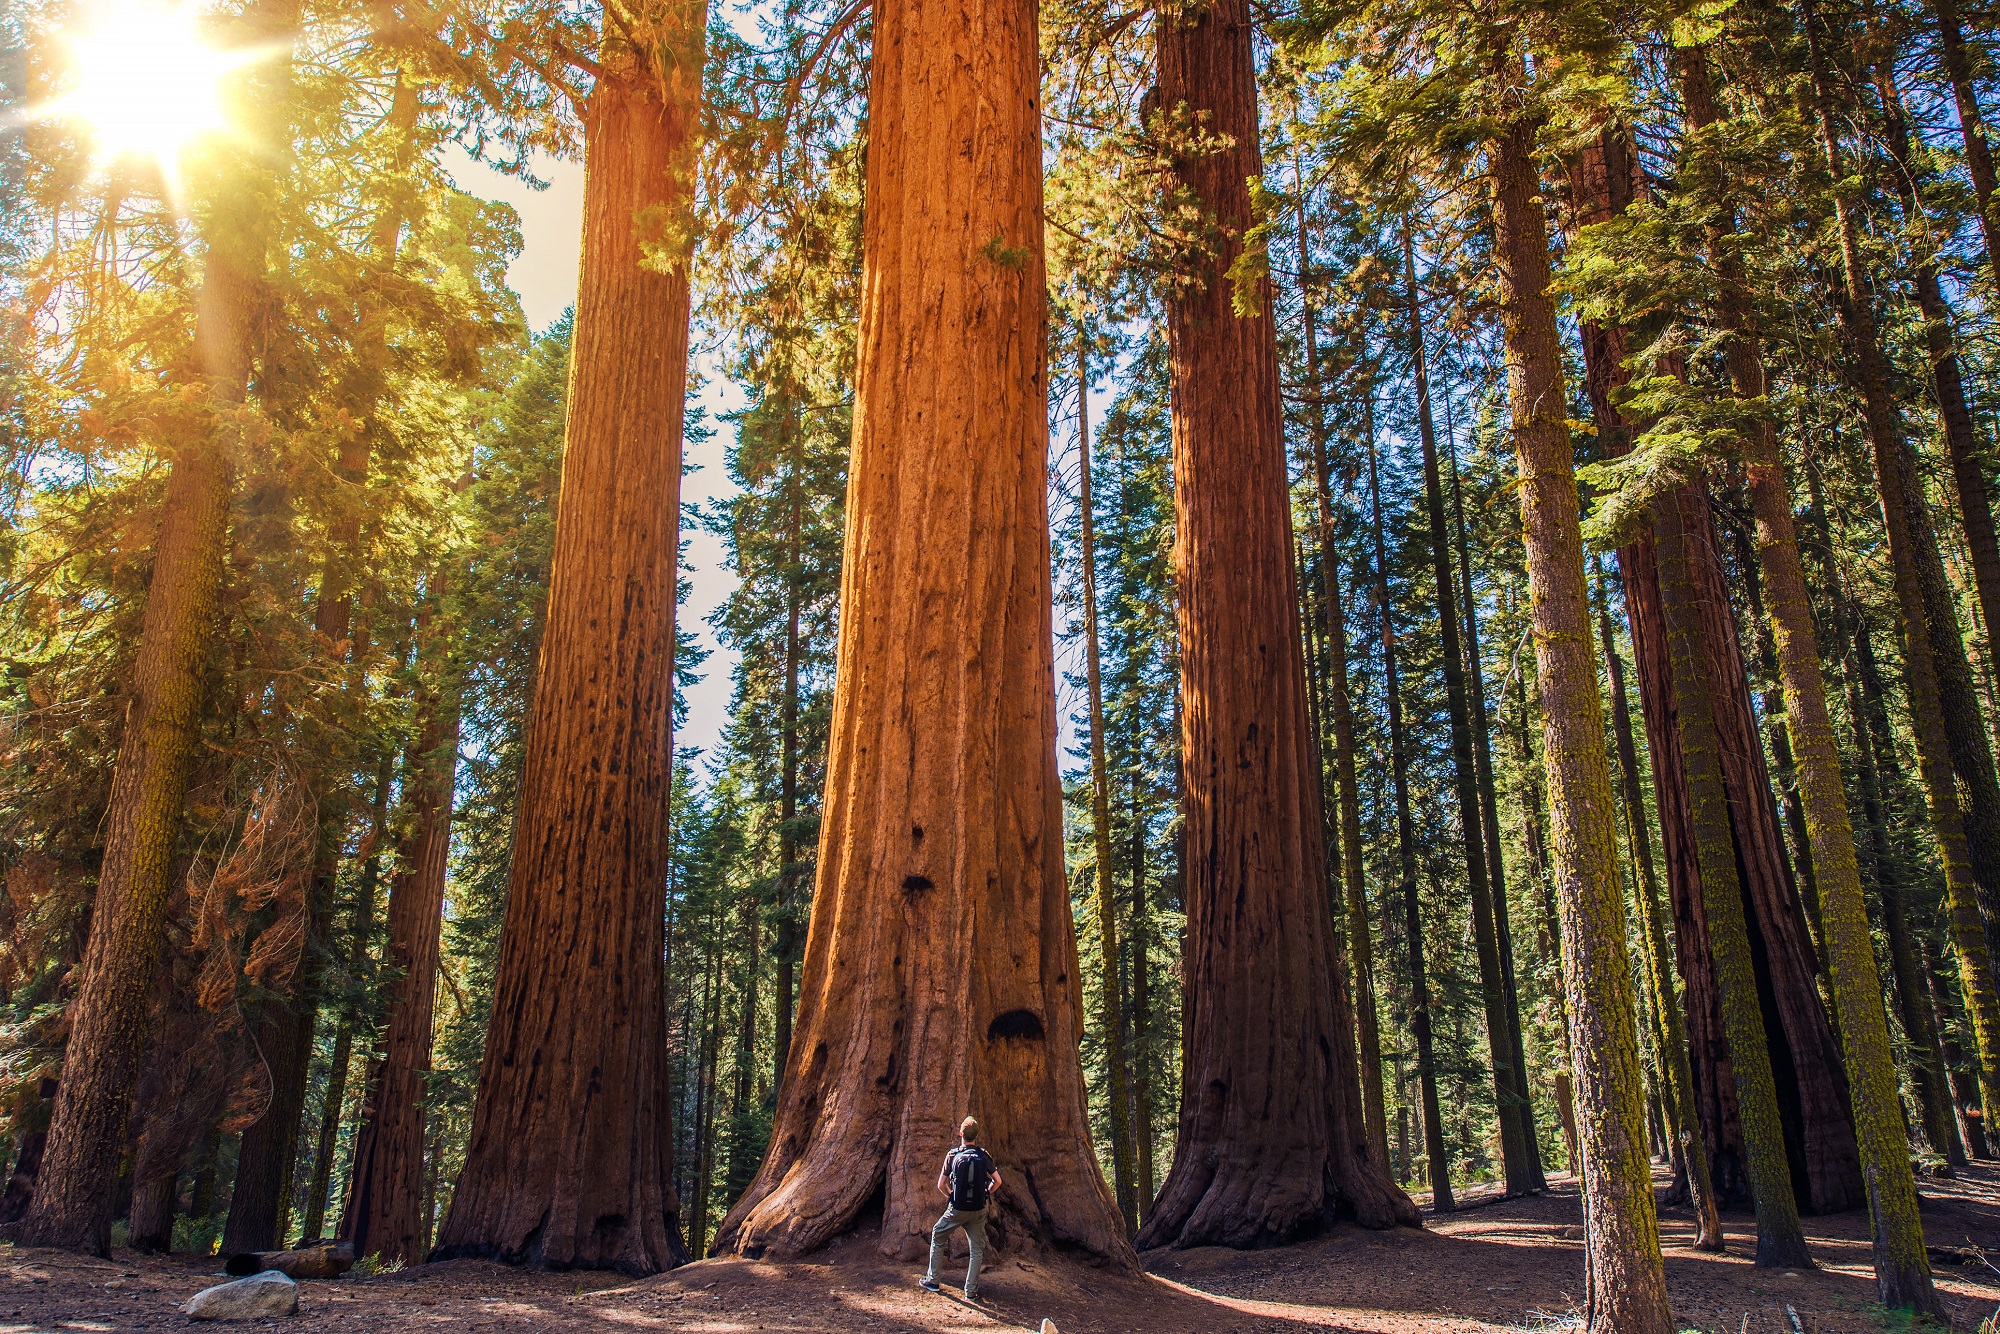 Em uma floresta, um homem está parado, de pé, em frente a uma árvore de grandes proporções, com cerca de oito vezes o seu tamanho. Ao fundo, outras árvores semelhantes. Crédito: welcomia/iStock 